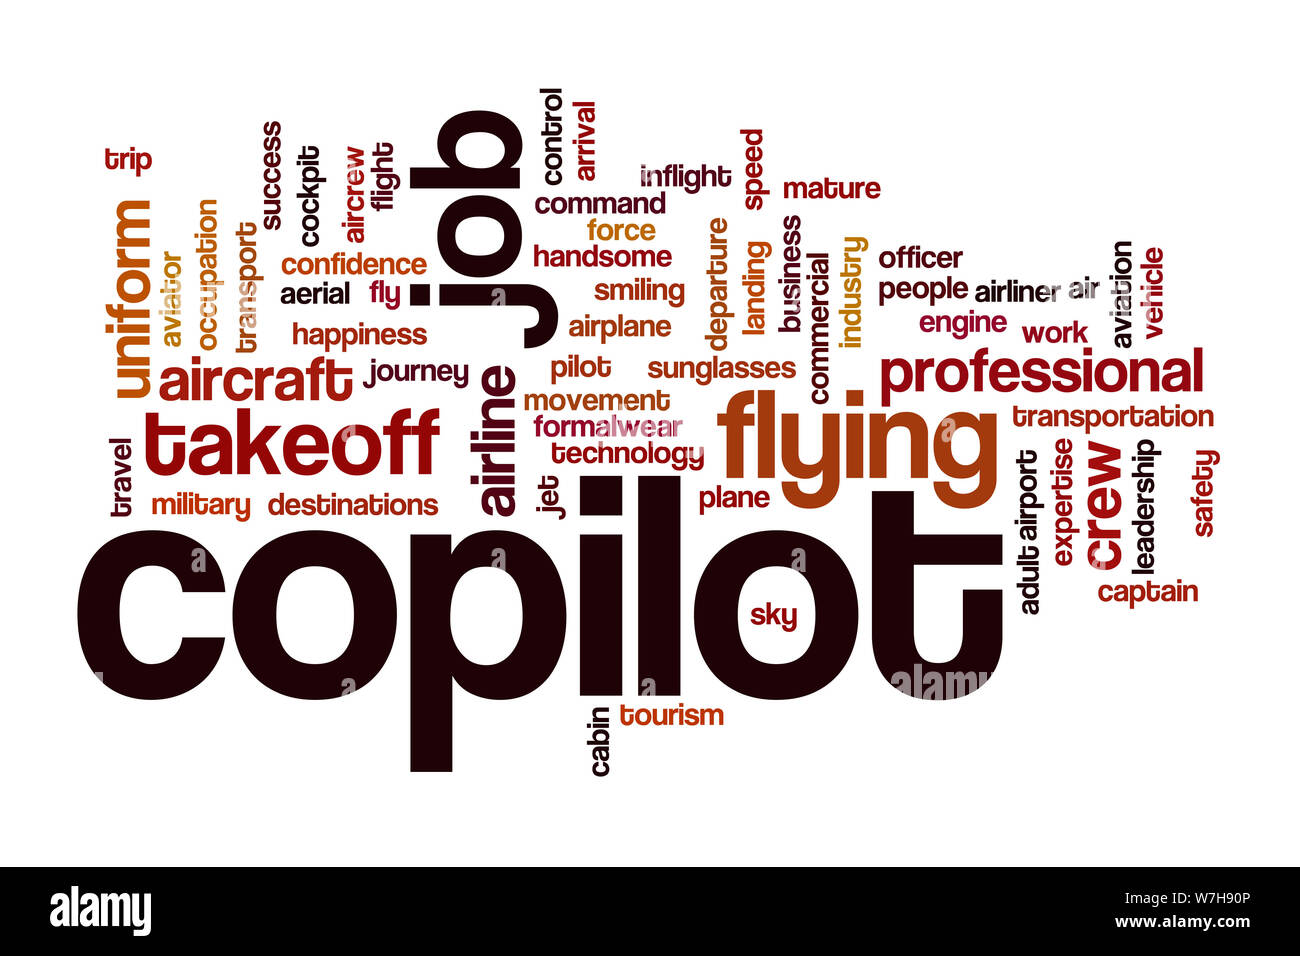 Copilot word cloud concept Stock Photo